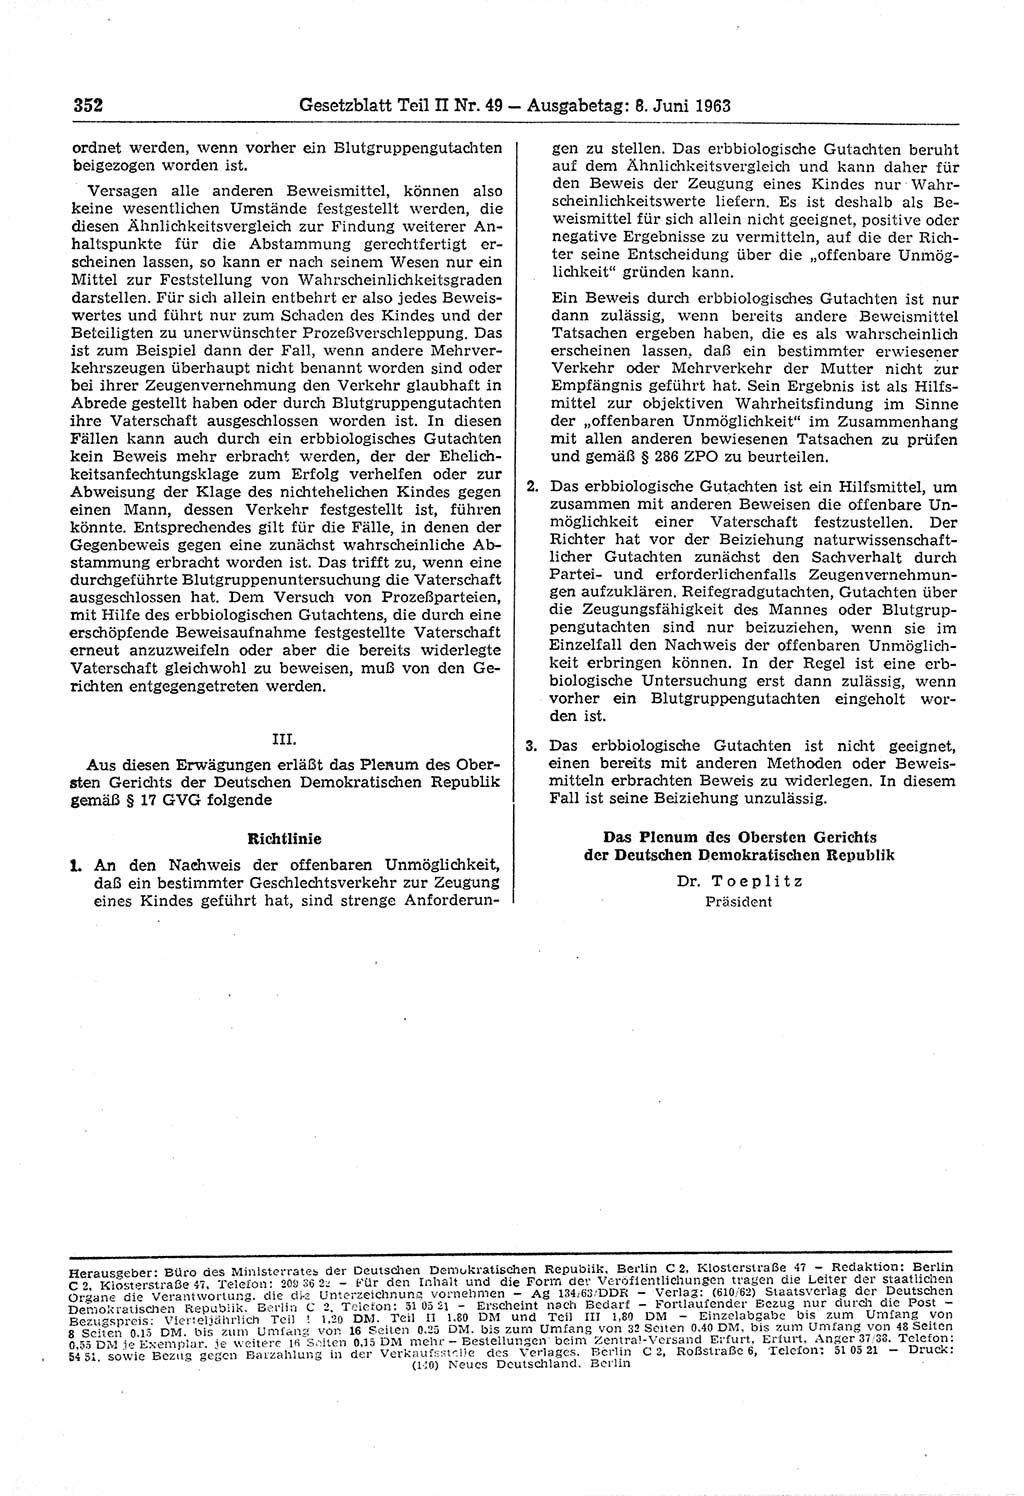 Gesetzblatt (GBl.) der Deutschen Demokratischen Republik (DDR) Teil ⅠⅠ 1963, Seite 352 (GBl. DDR ⅠⅠ 1963, S. 352)